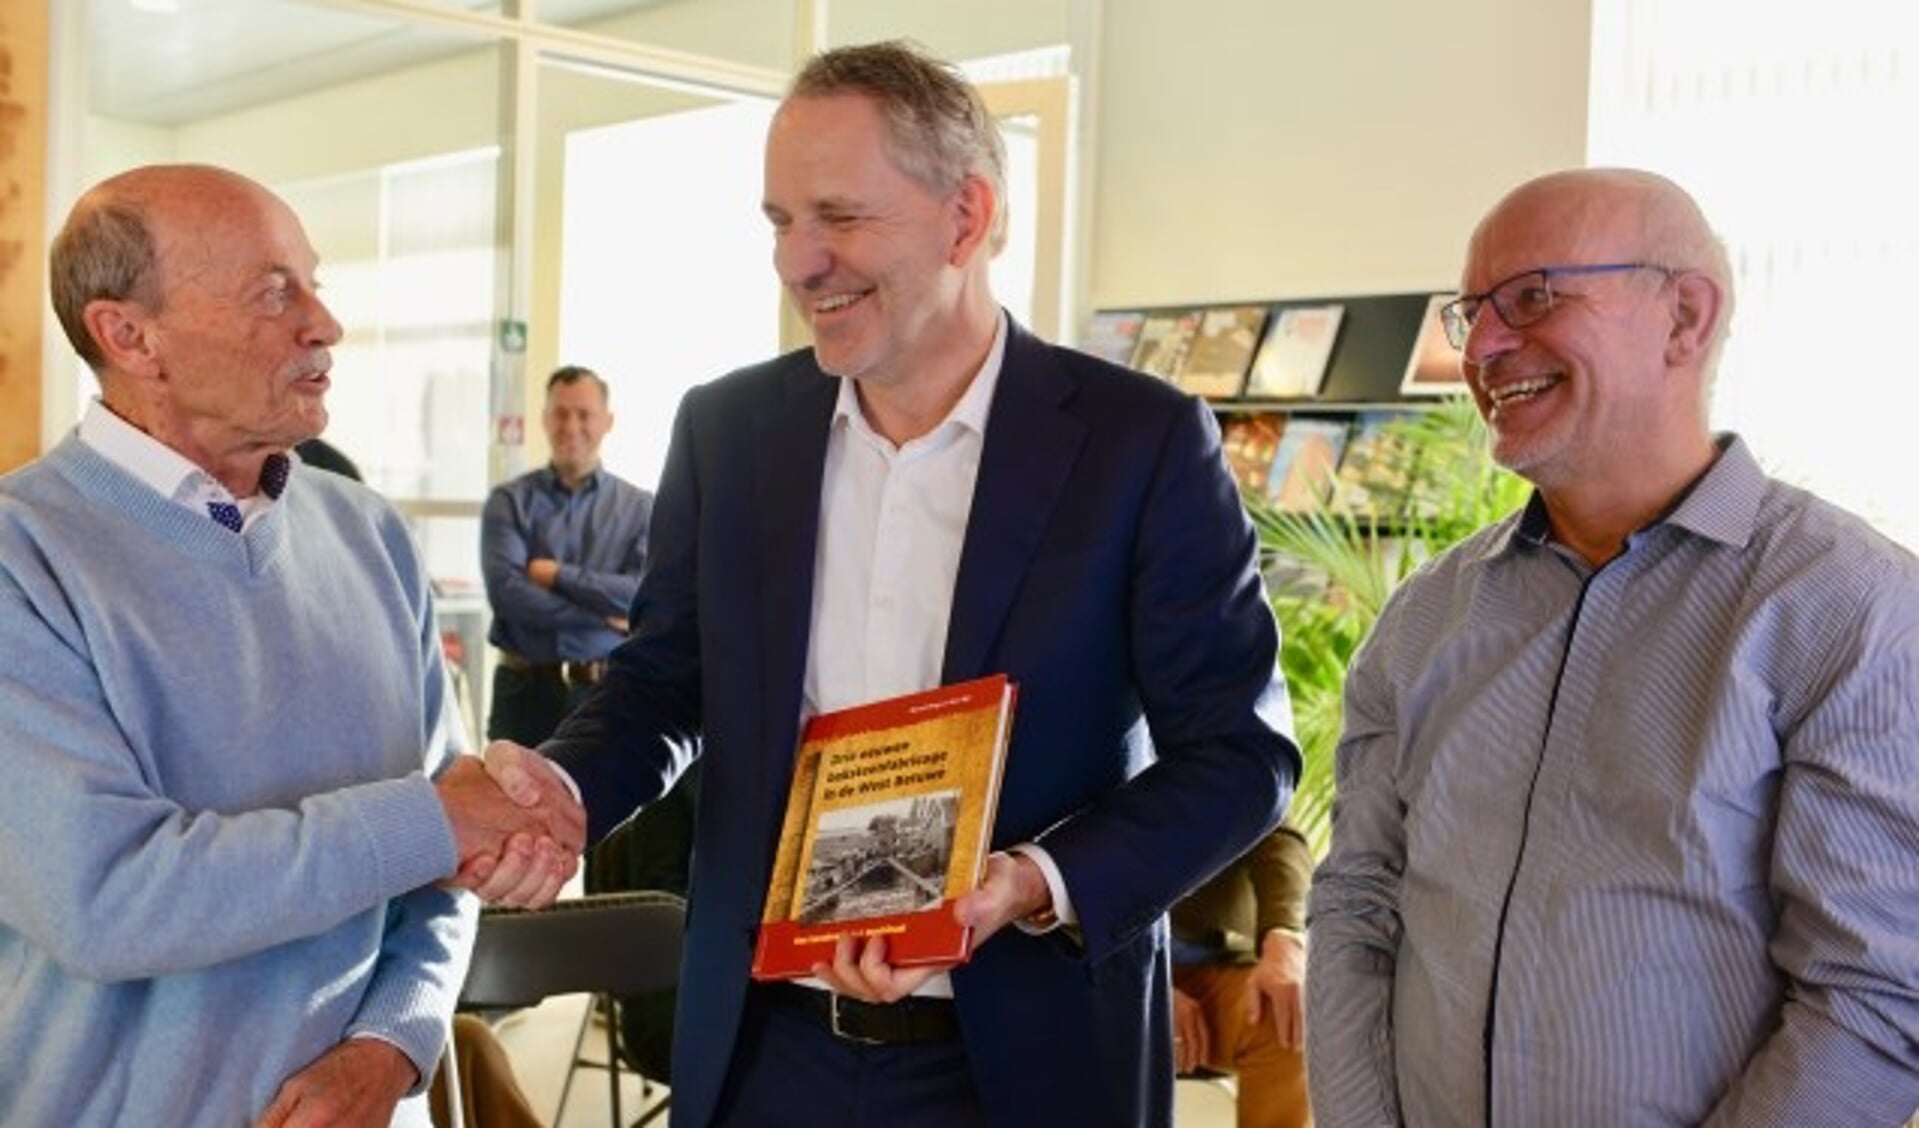 De auteurs overhandigen het eerste boek aan de directeur van de steenfabriek in Haaften (vlnr) Aart Bijl, dhr. Koekoek en Marcel Dings.